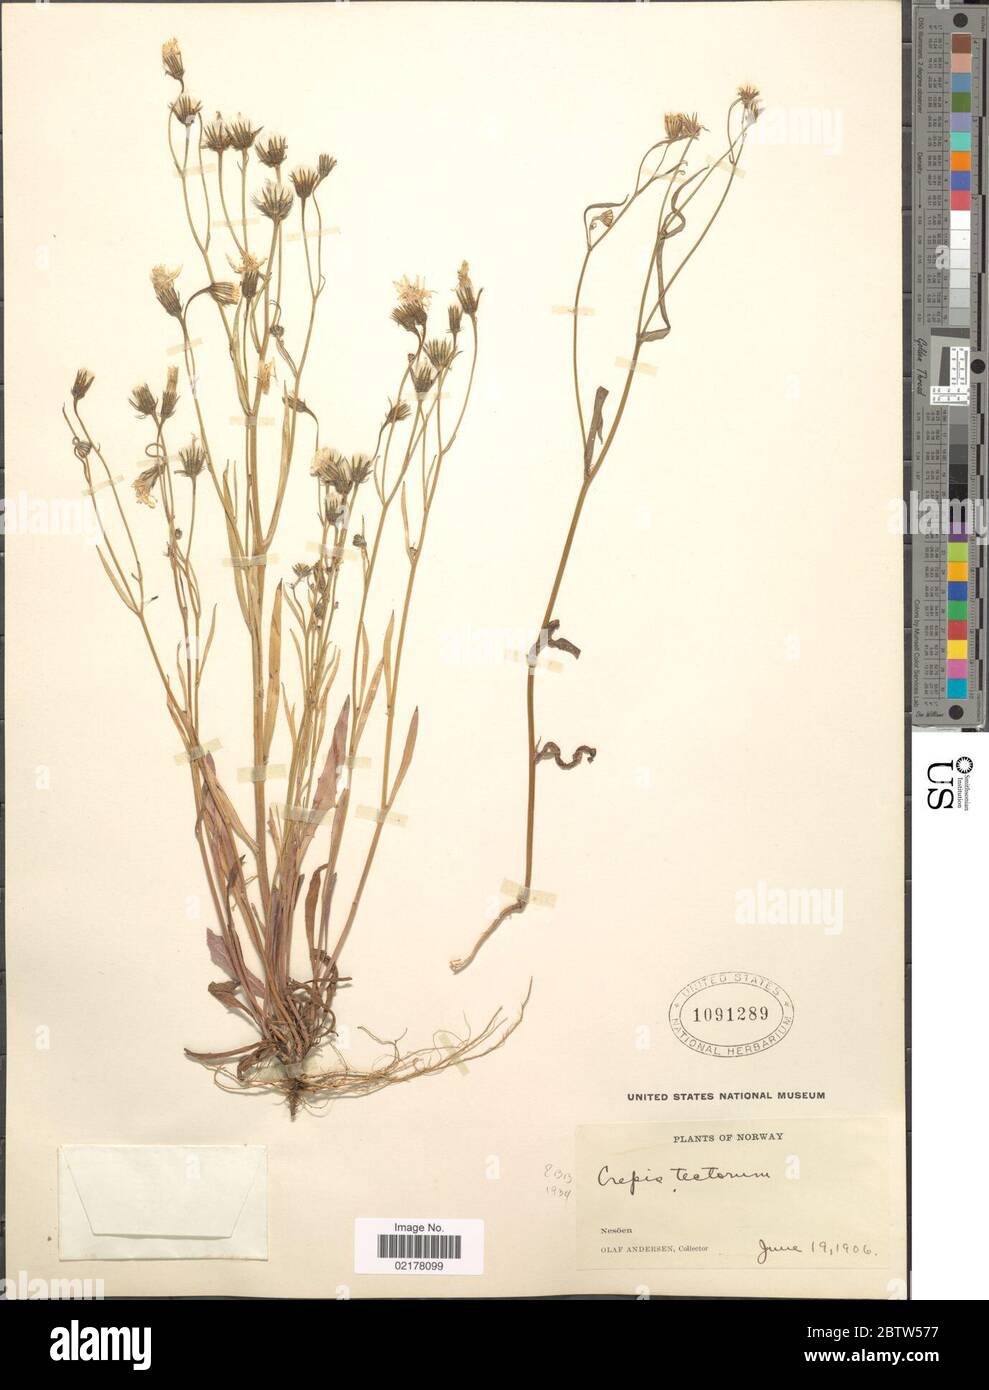 Crepis tectorum L. Stock Photo